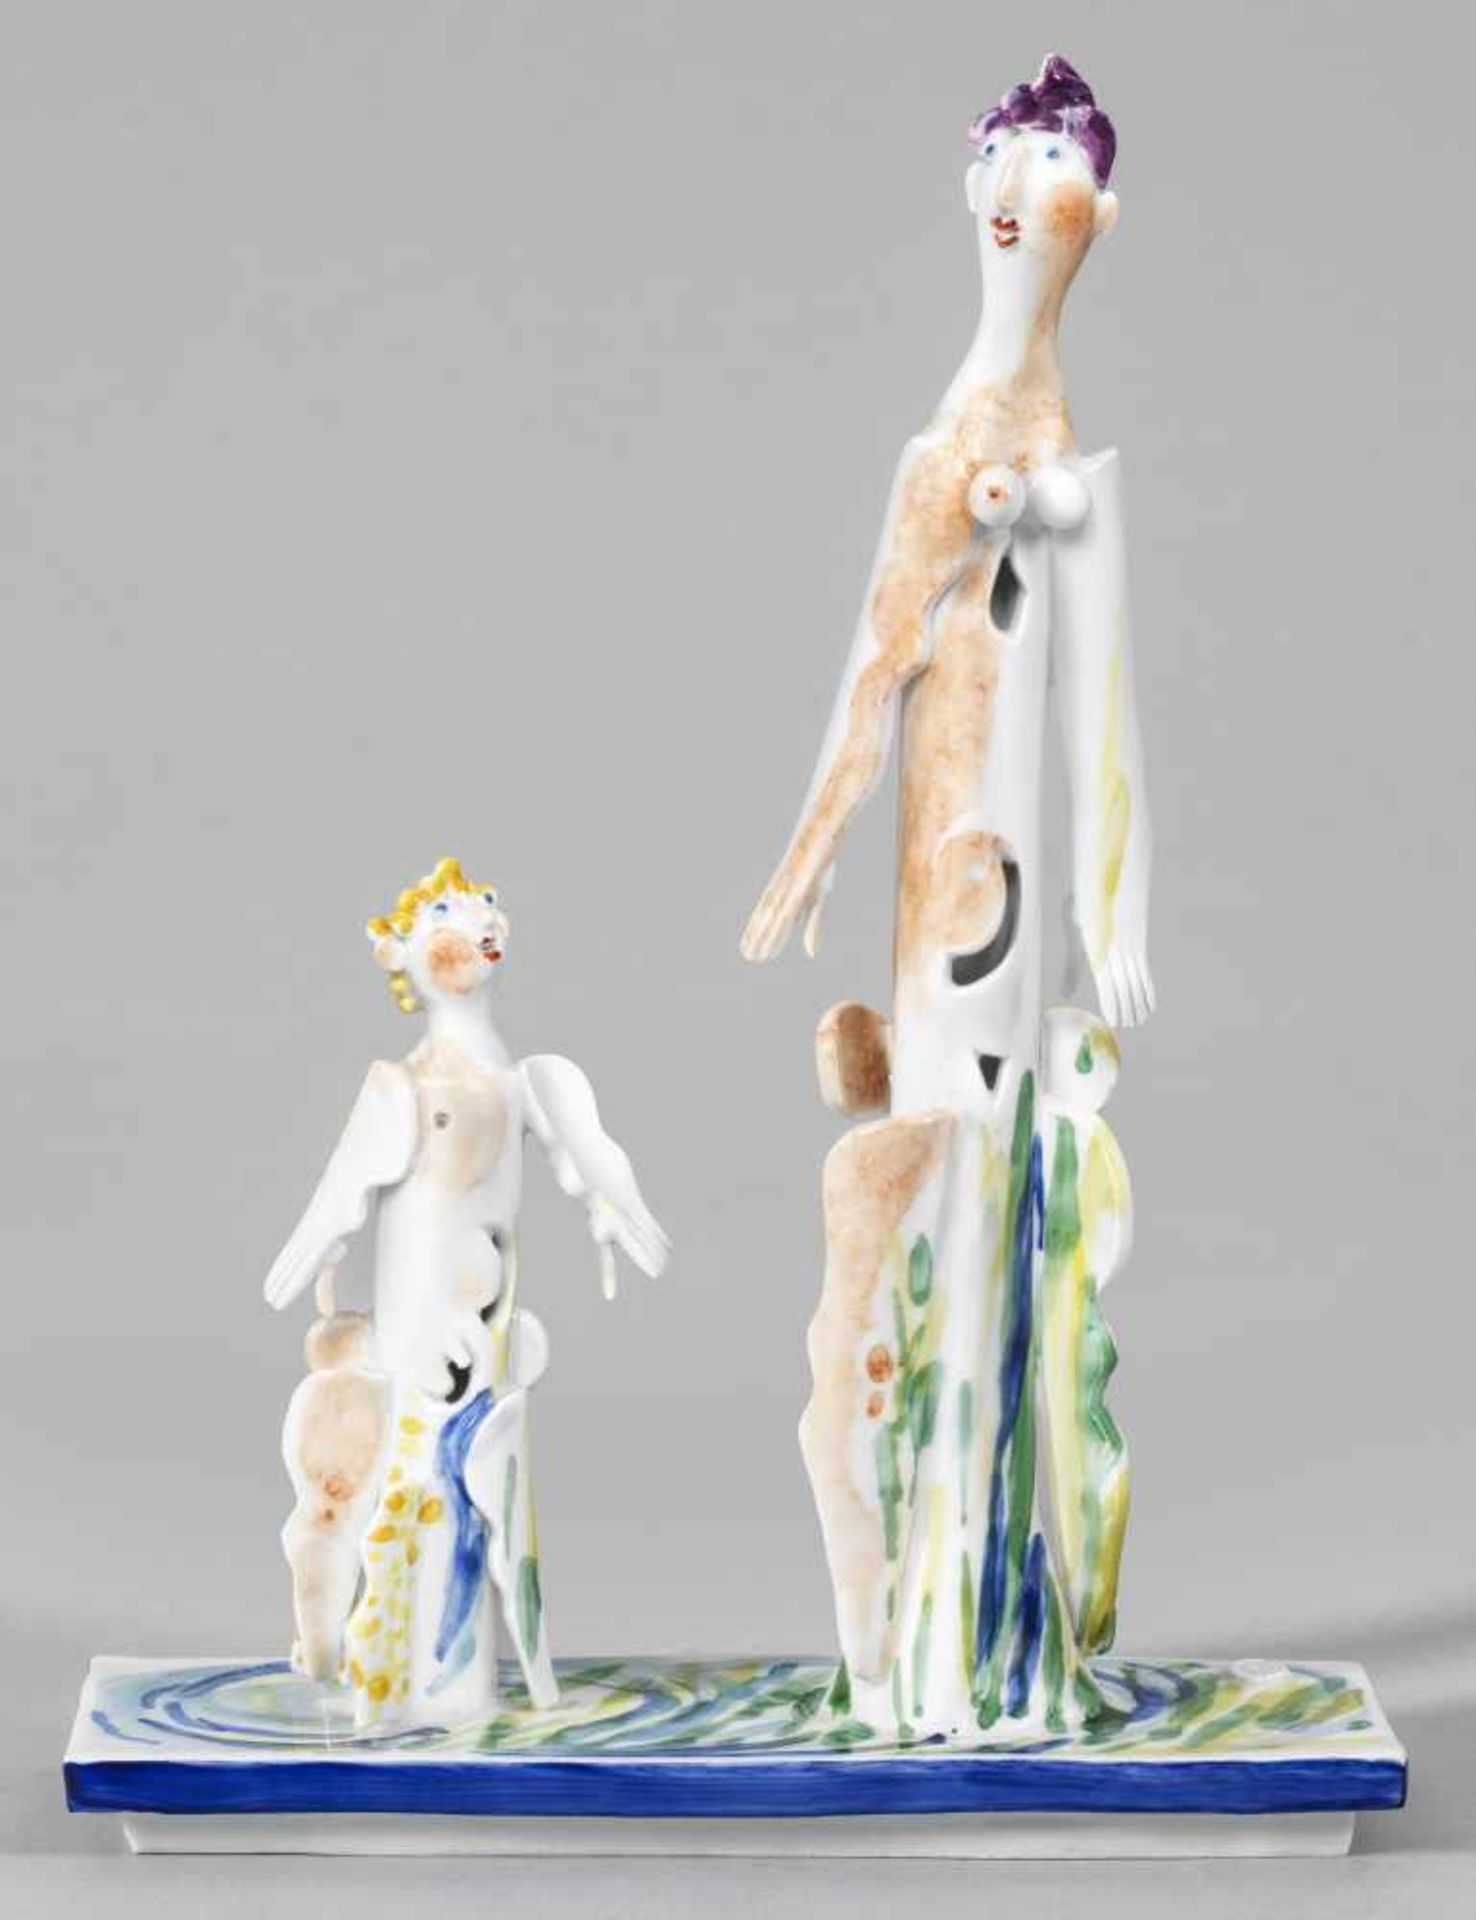 Unikat-Plastik "Mutter und Kind" von Peter Strang